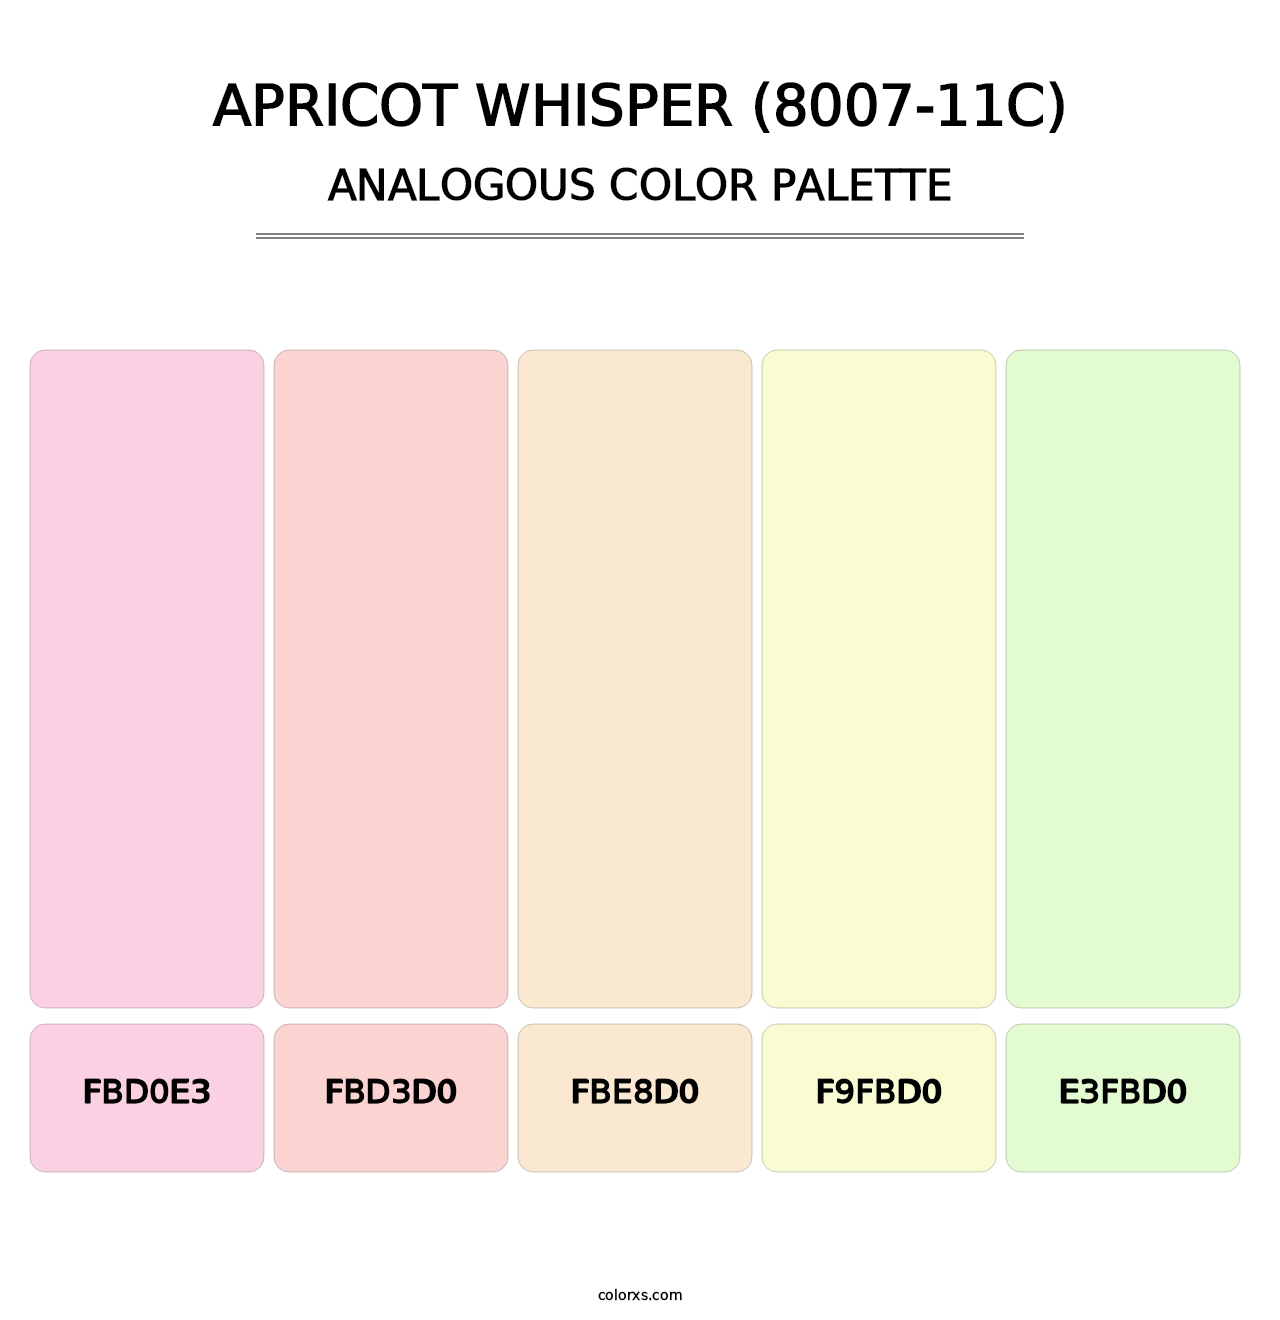 Apricot Whisper (8007-11C) - Analogous Color Palette